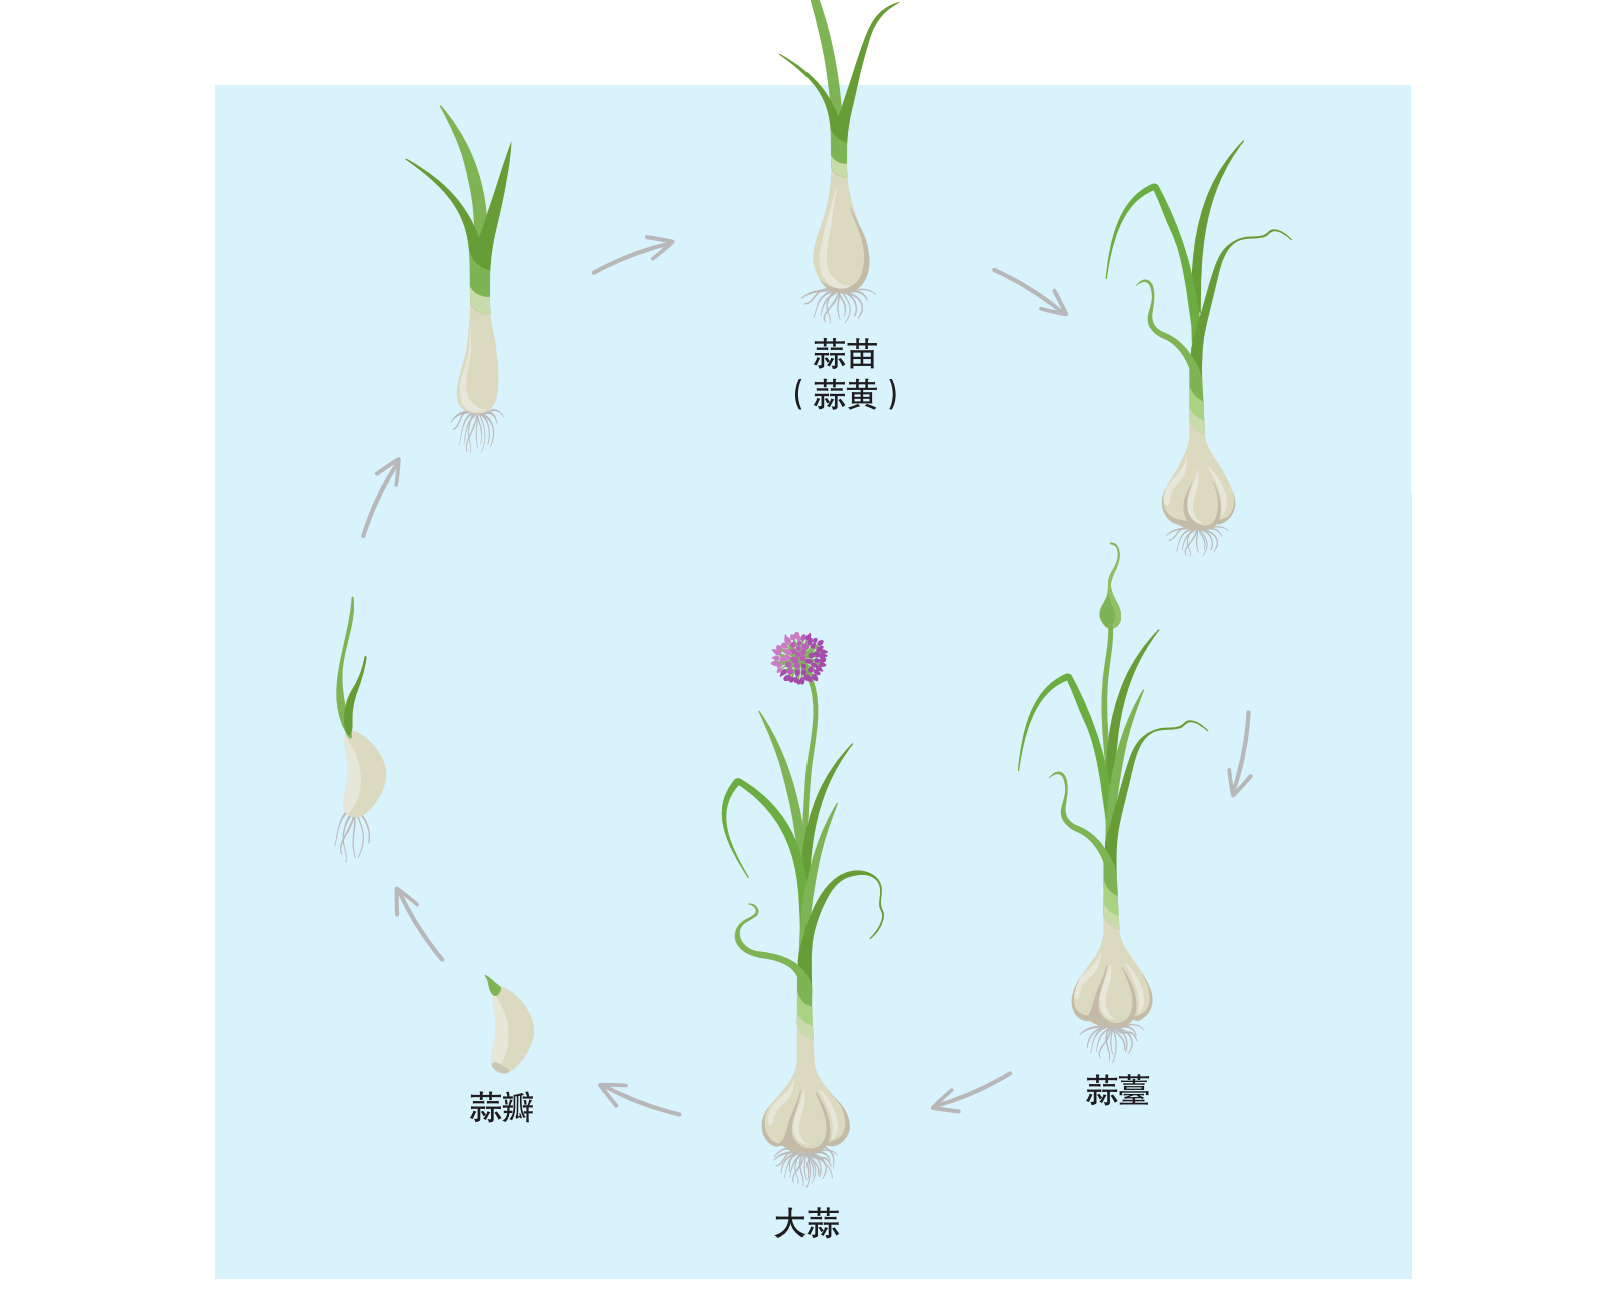 蔬菜生长过程图解图片